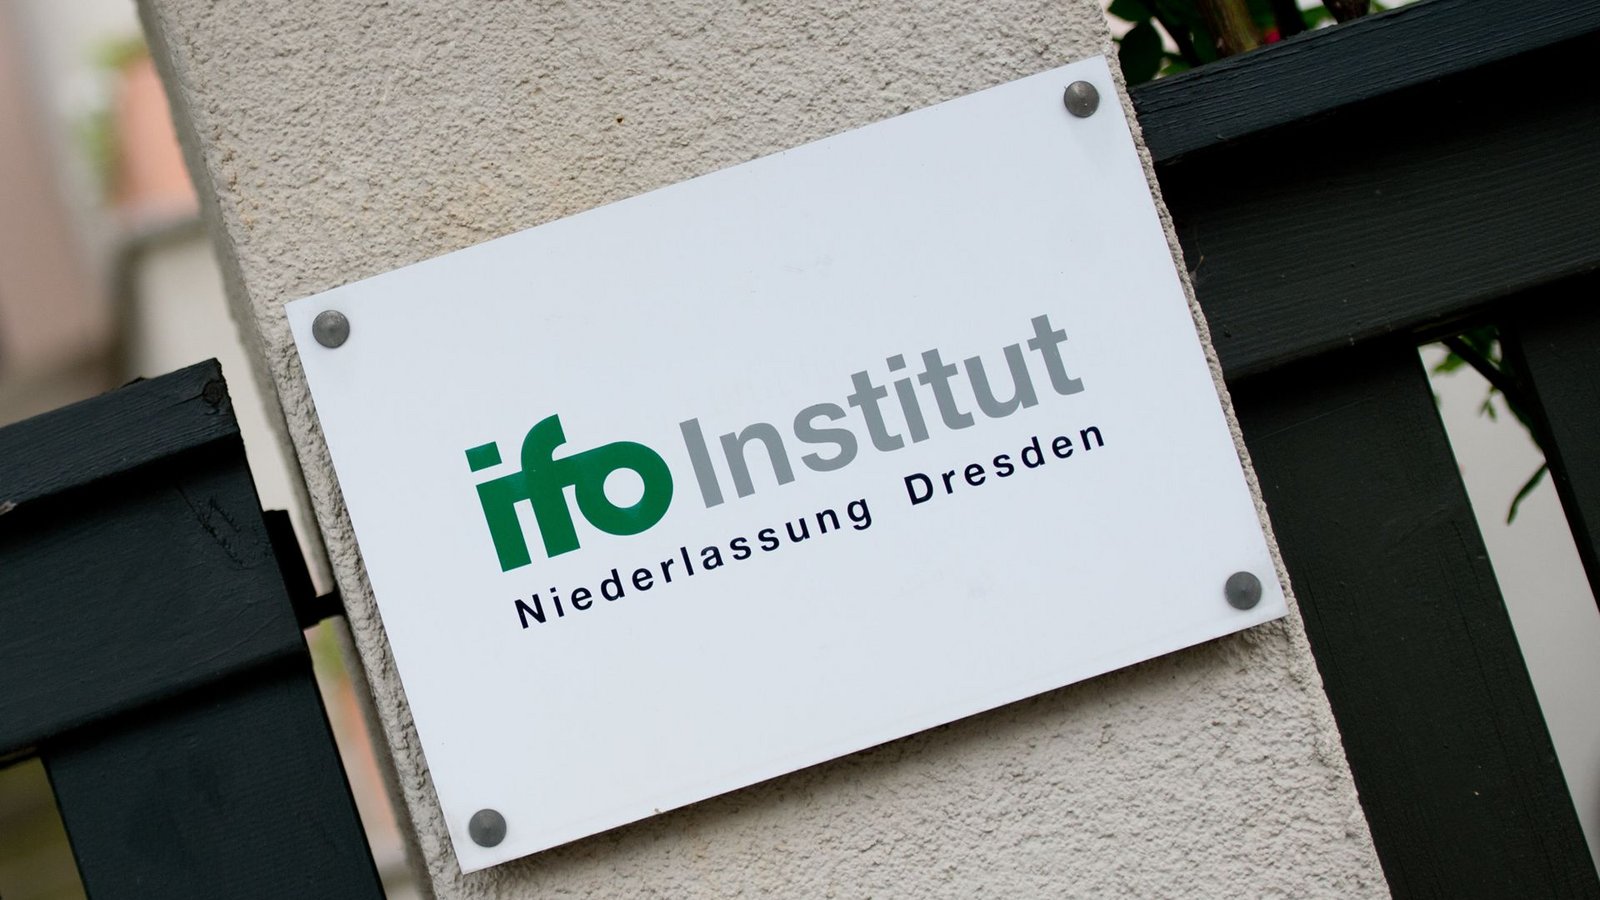 Das Ifo-Institut hat Ökonomen befragt: Bürokratieabbau und Investitionen in die Infrastruktur und Digitalisierung seien wichtige Reformen für Deutschland. (Symbolbild)Foto: dpa/Arno Burgi